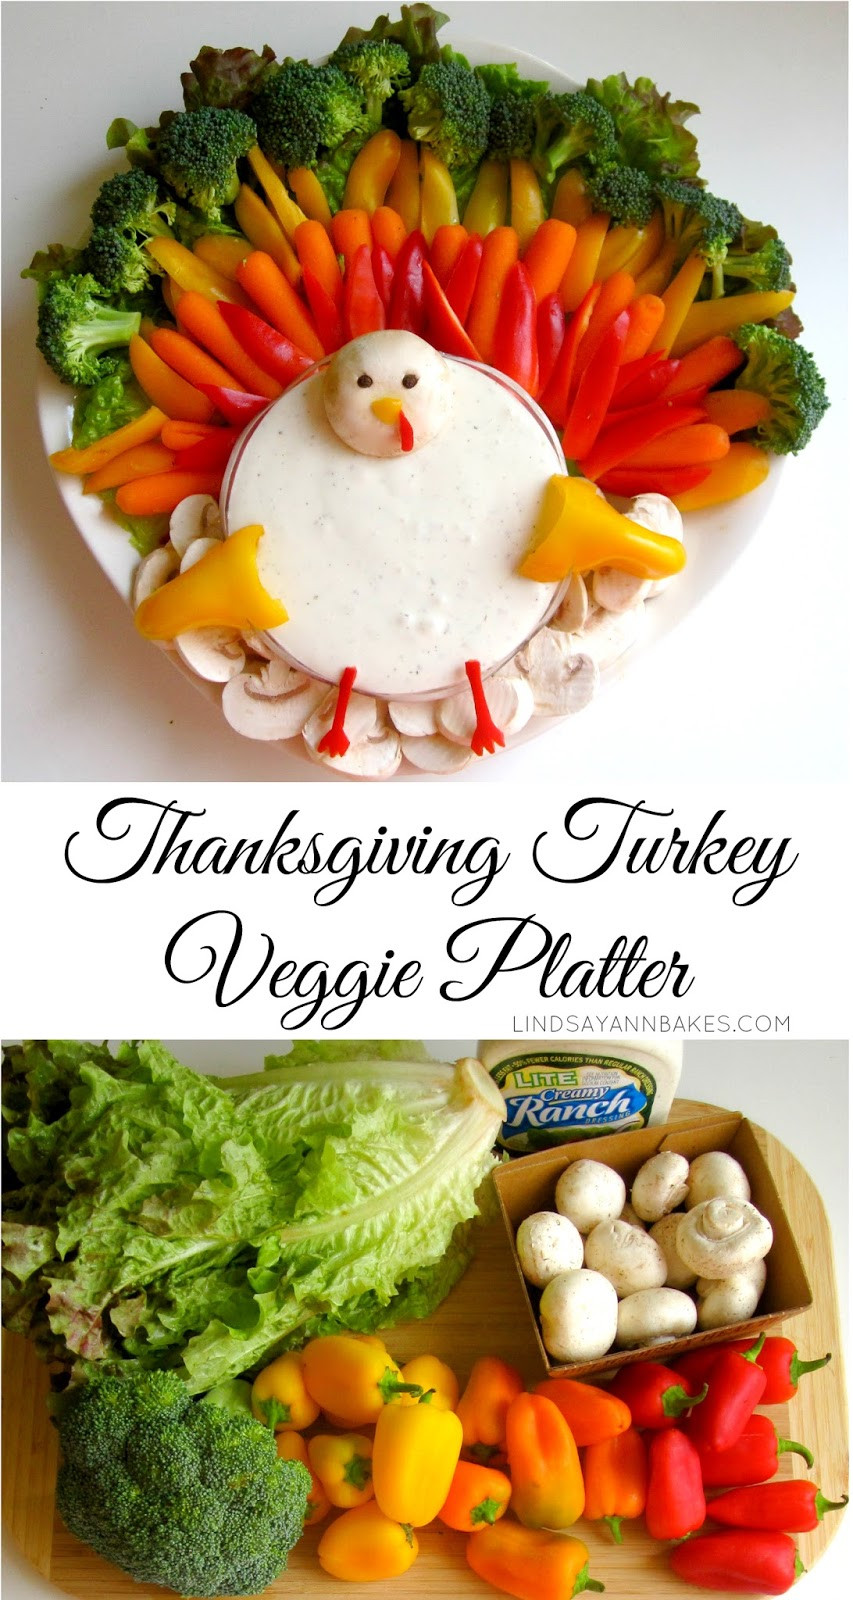 Turkey Veggie Platter For Thanksgiving
 Thanksgiving Turkey Veggie Platter Lindsay Ann Bakes